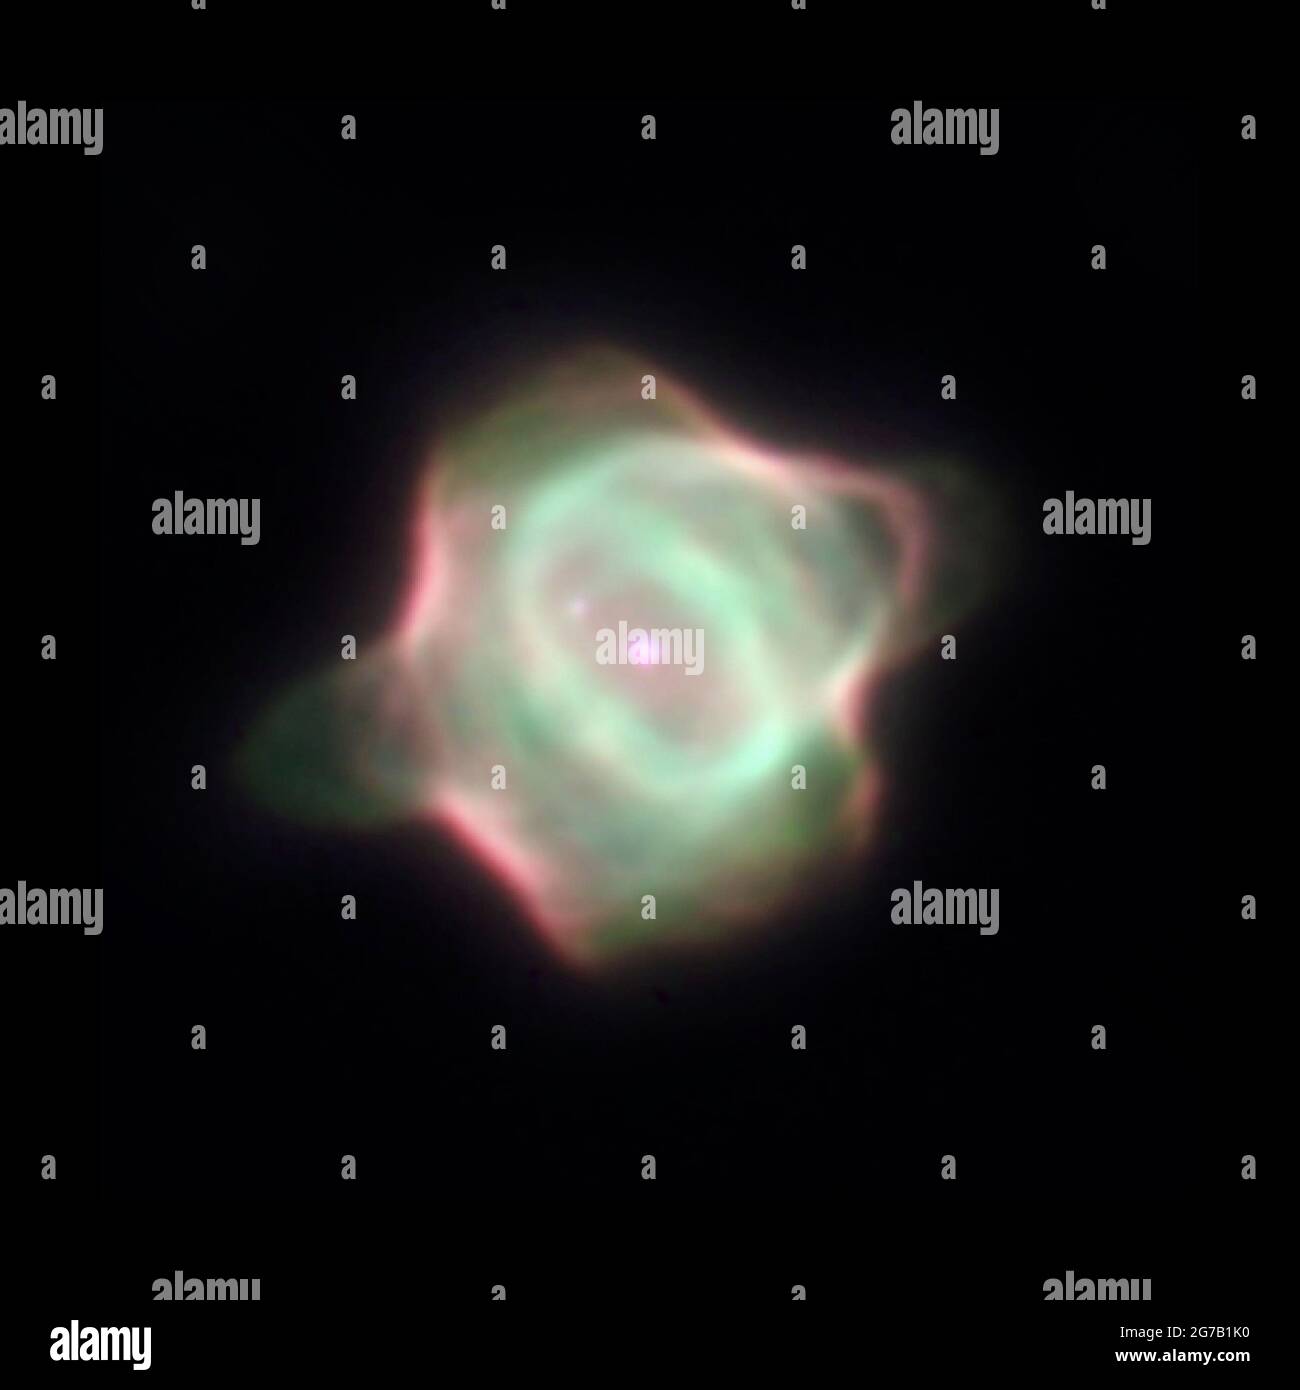 Stingray Nebula (Hen-1357), der jüngste bekannte planetarische Nebel. In diesem Bild befindet sich der helle Zentralstern in der Mitte des grünen Gasrings. Sein Begleitschirm liegt diagonal über ihm bei 10 Uhr. Ein Gassporn (grün) bildet aufgrund der Gravitation eine schwache Brücke zum Begleitstern. Das Bild zeigt auch einen Ring aus Gas (grün) um den zentralen Stern, mit Gasblasen unten links und oben rechts vom Ring. Der Nebel ist so groß wie 130 Sonnensysteme. Eine einzigartige optimierte und verbesserte Version eines NASA-Bildes / Pflichtnachweis: NASA Stockfoto